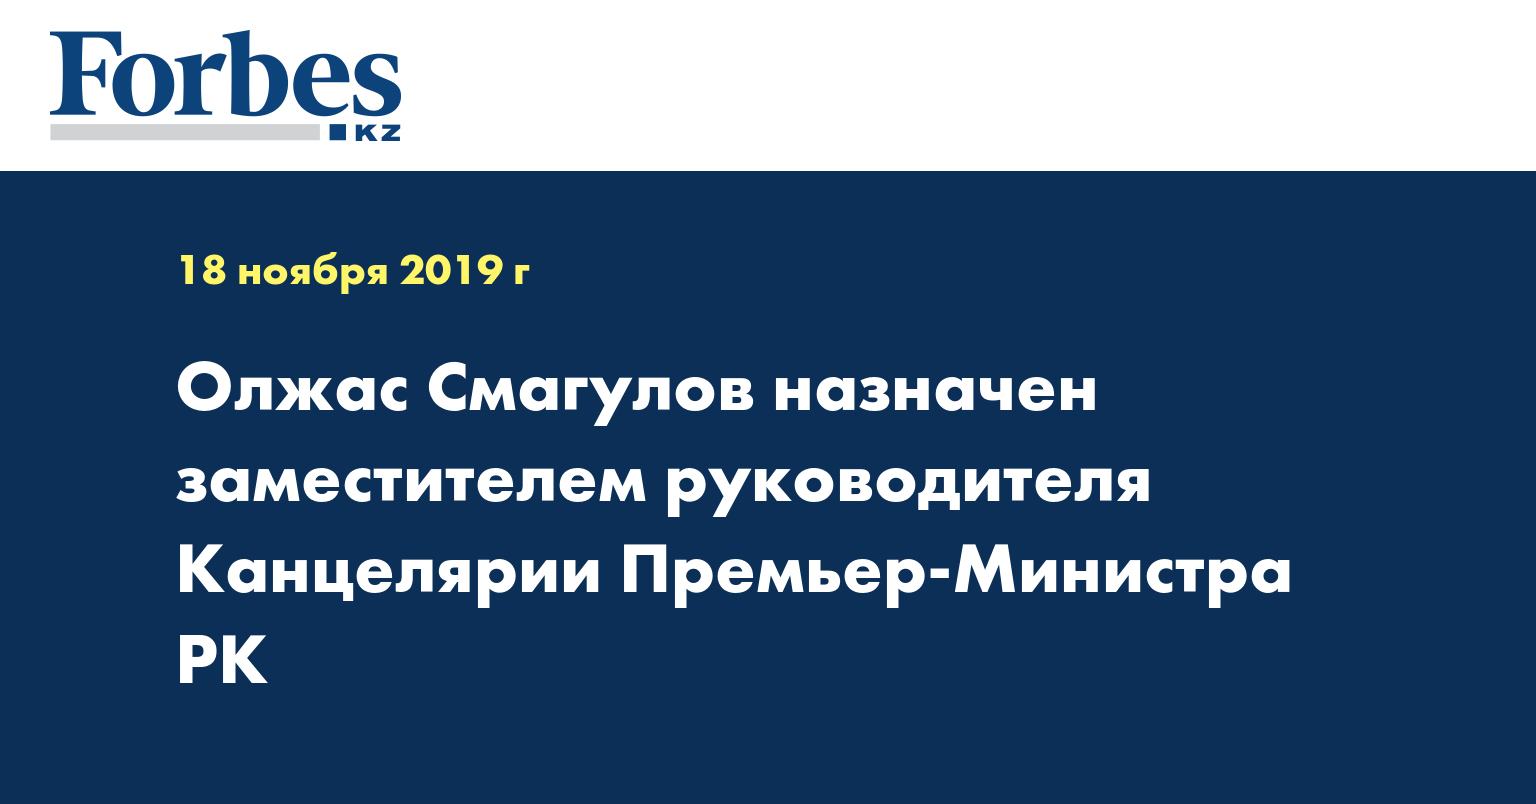 Олжас Смагулов назначен заместителем руководителя Канцелярии Премьер-Министра РК